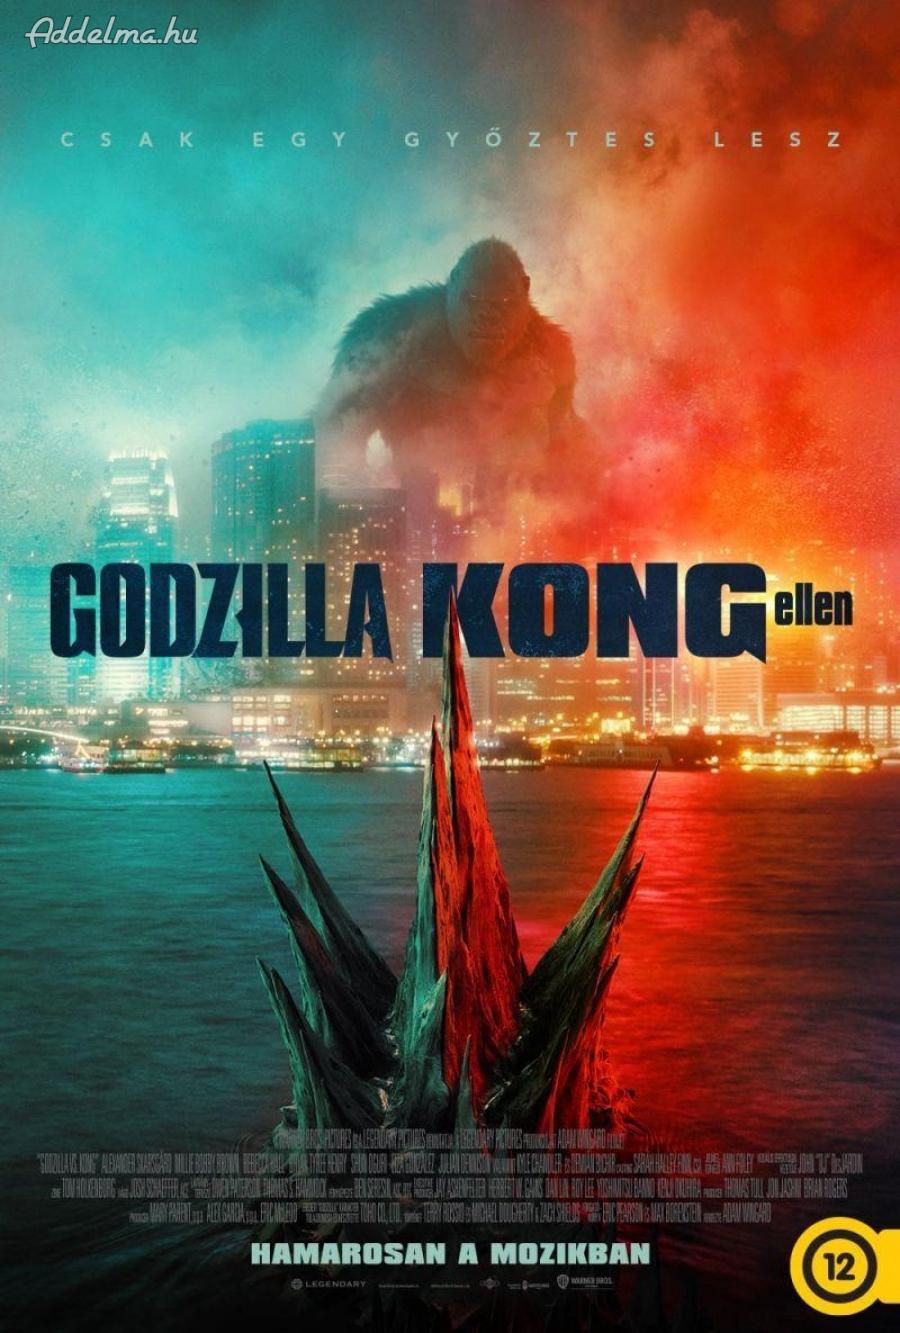 Godzilla Kong ellen film mozi plakát poszter